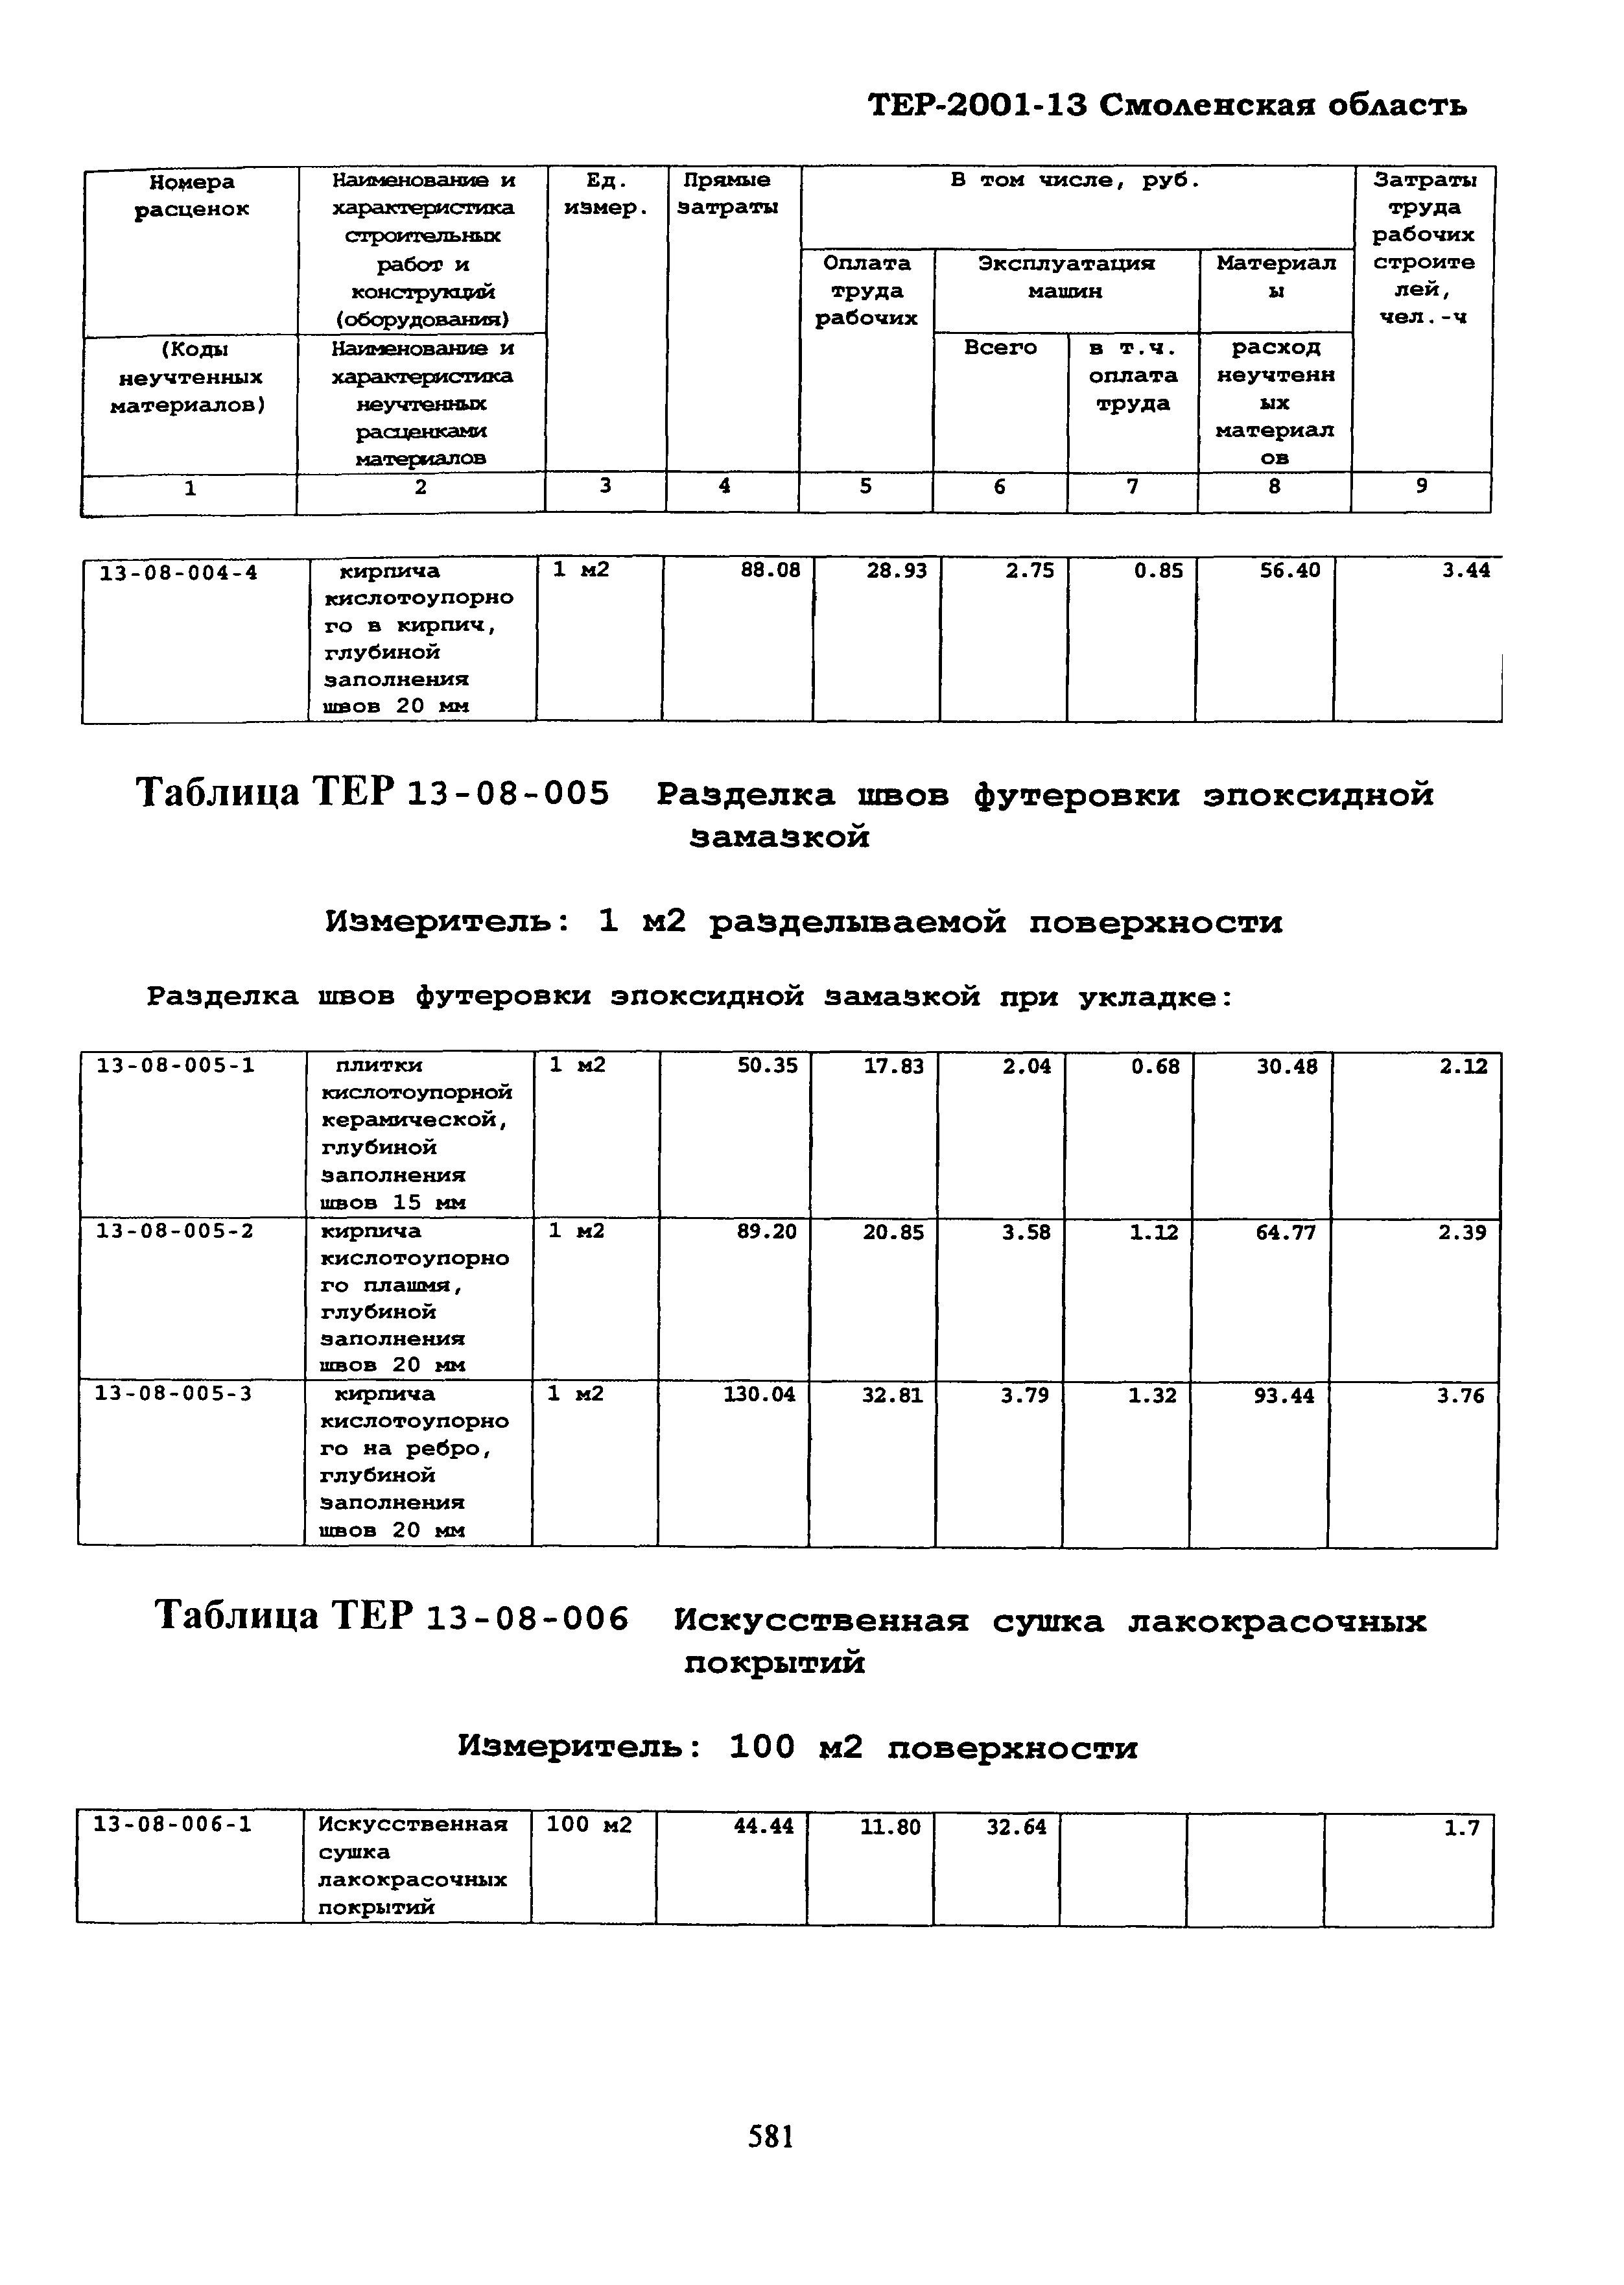 ТЕР Смоленской обл. 2001-13